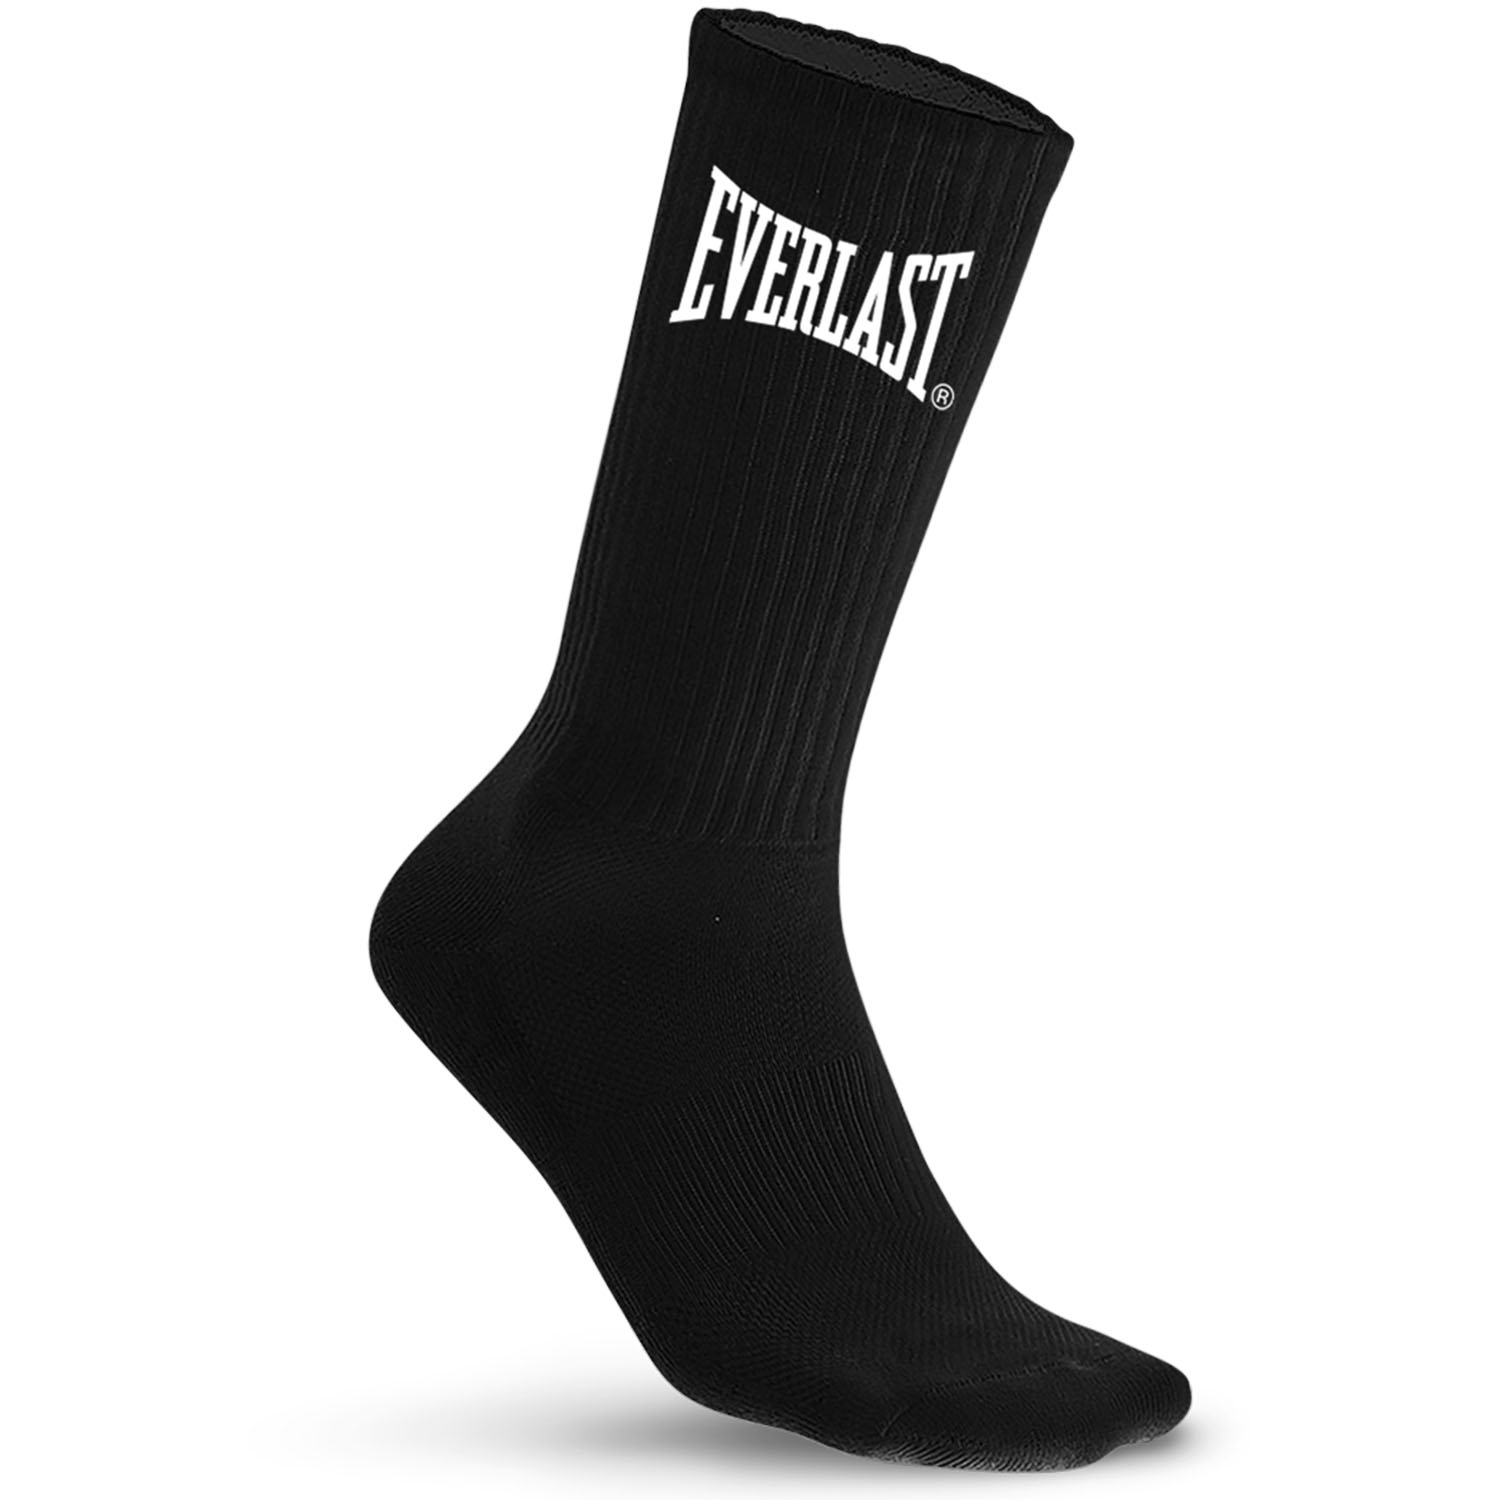 Everlast Socken, 10er Pack, schwarz